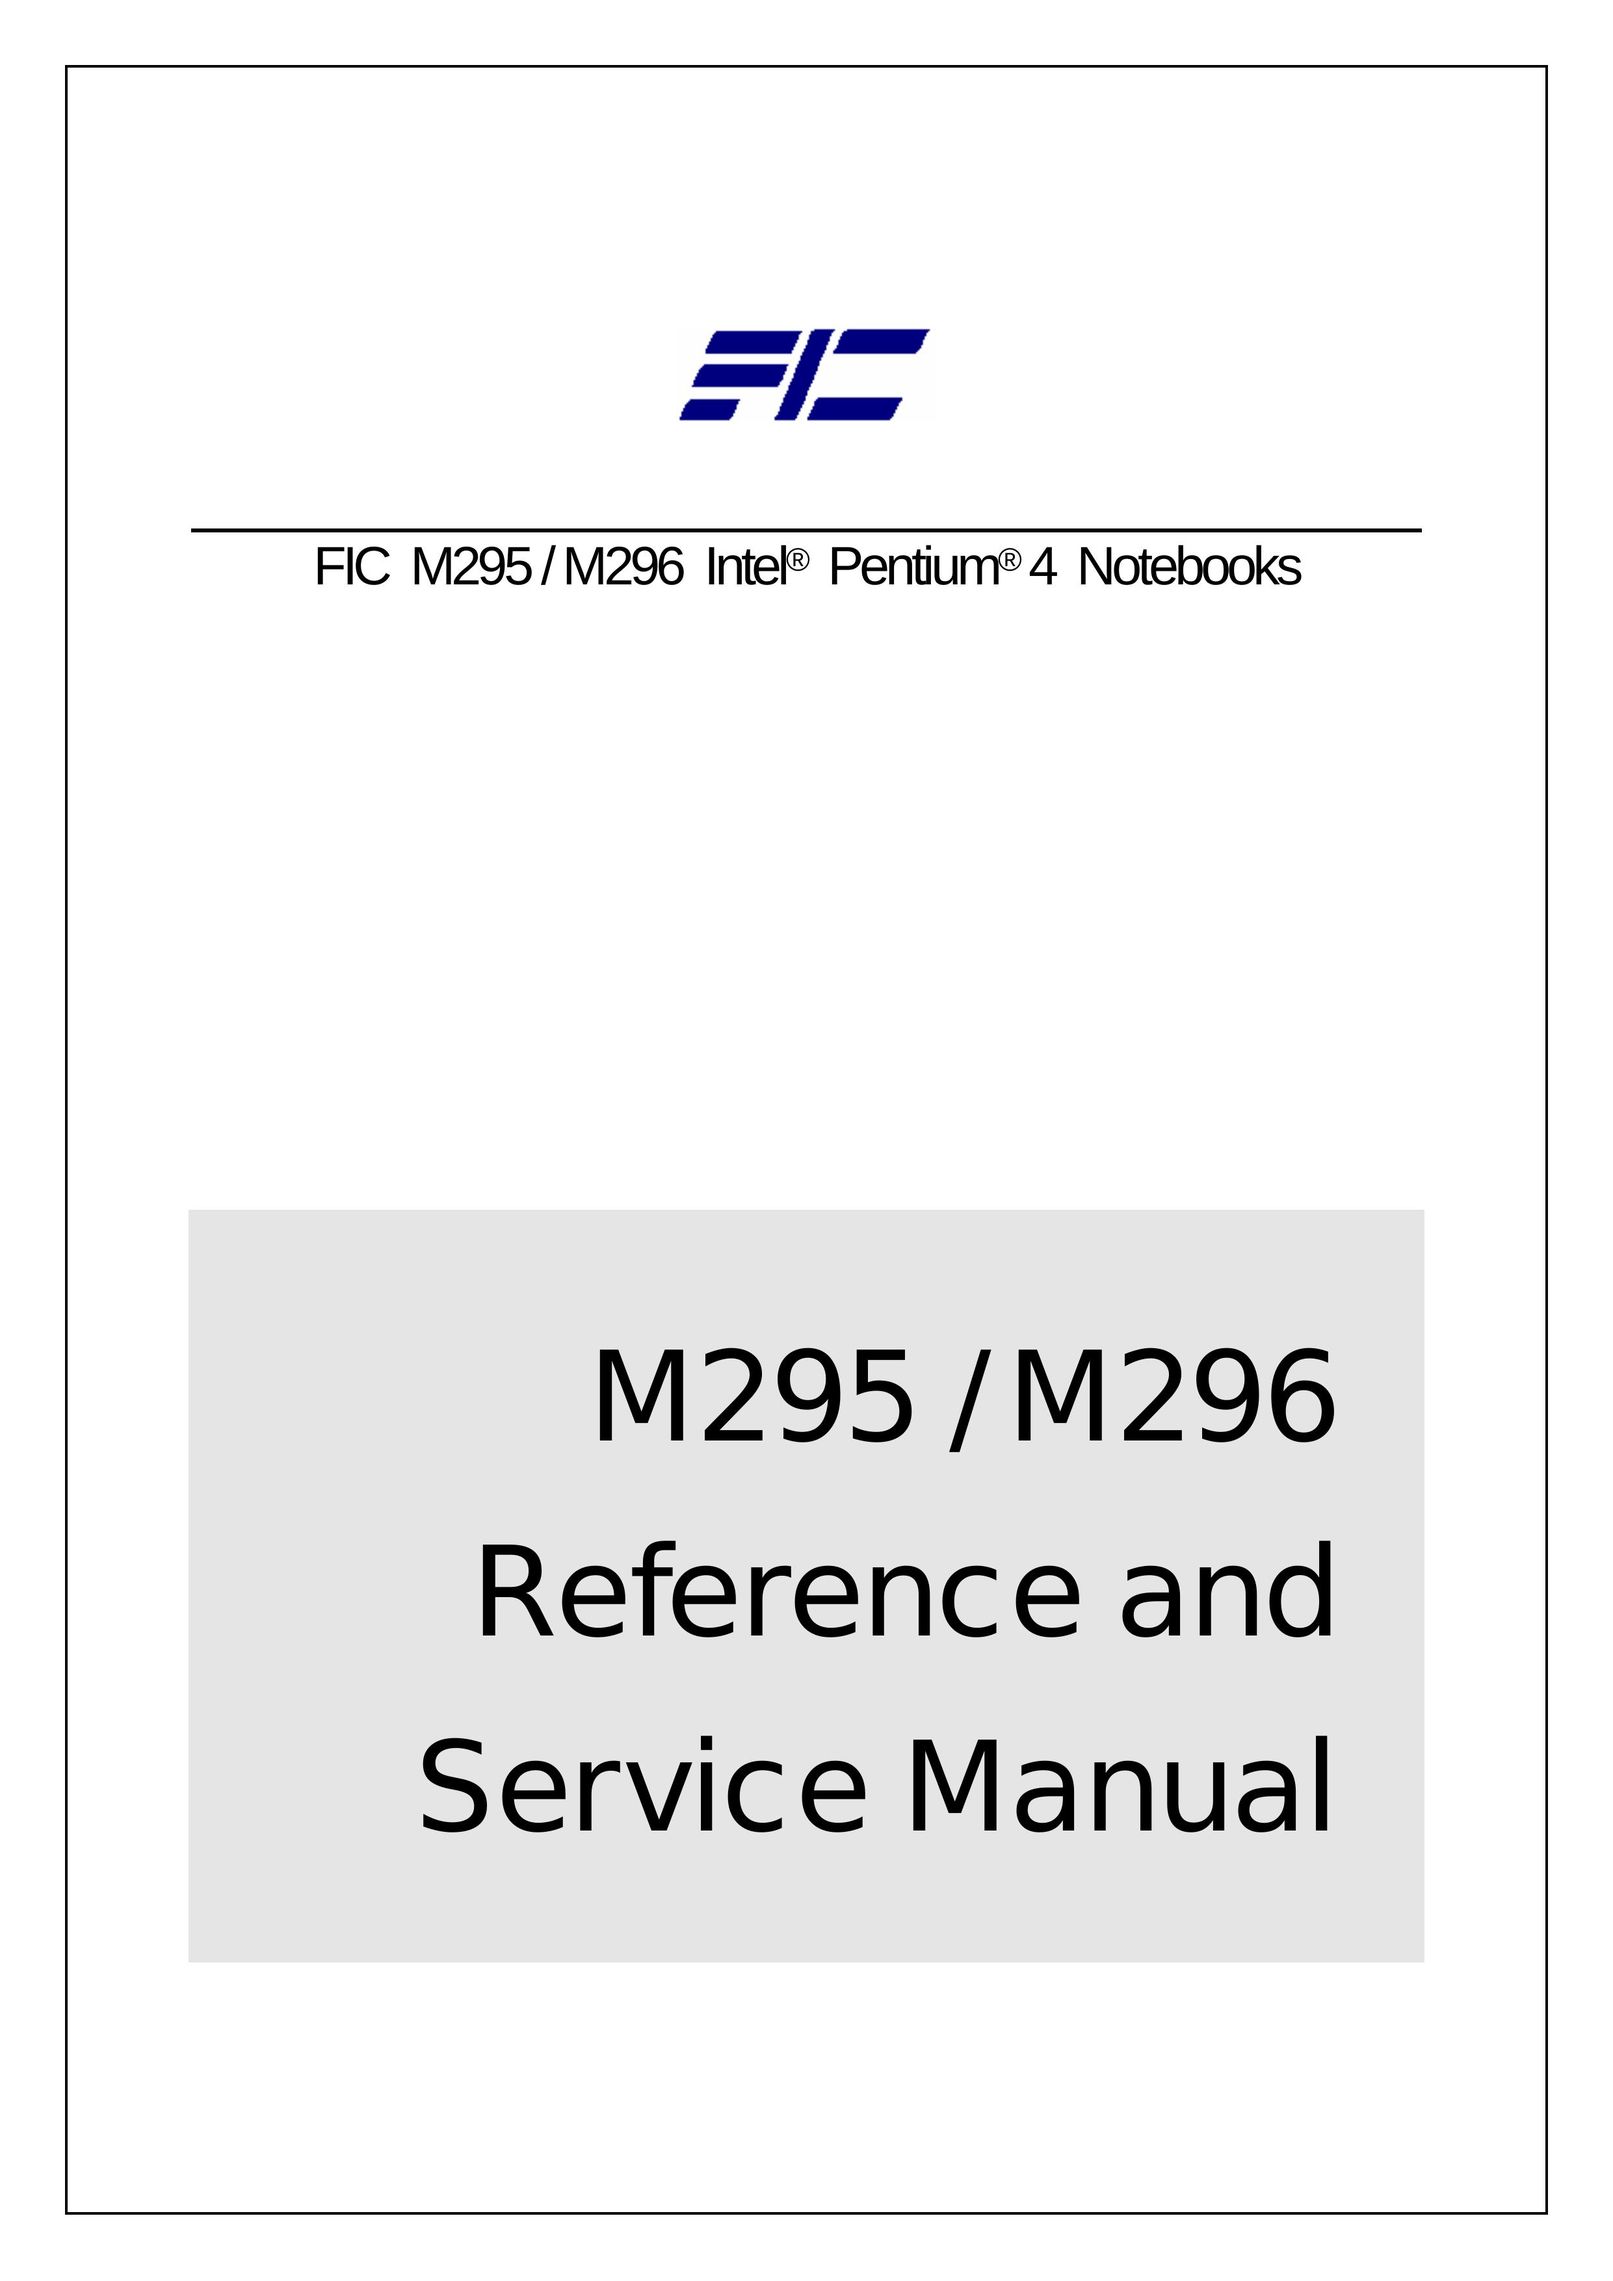 FIC M296 Laptop User Manual